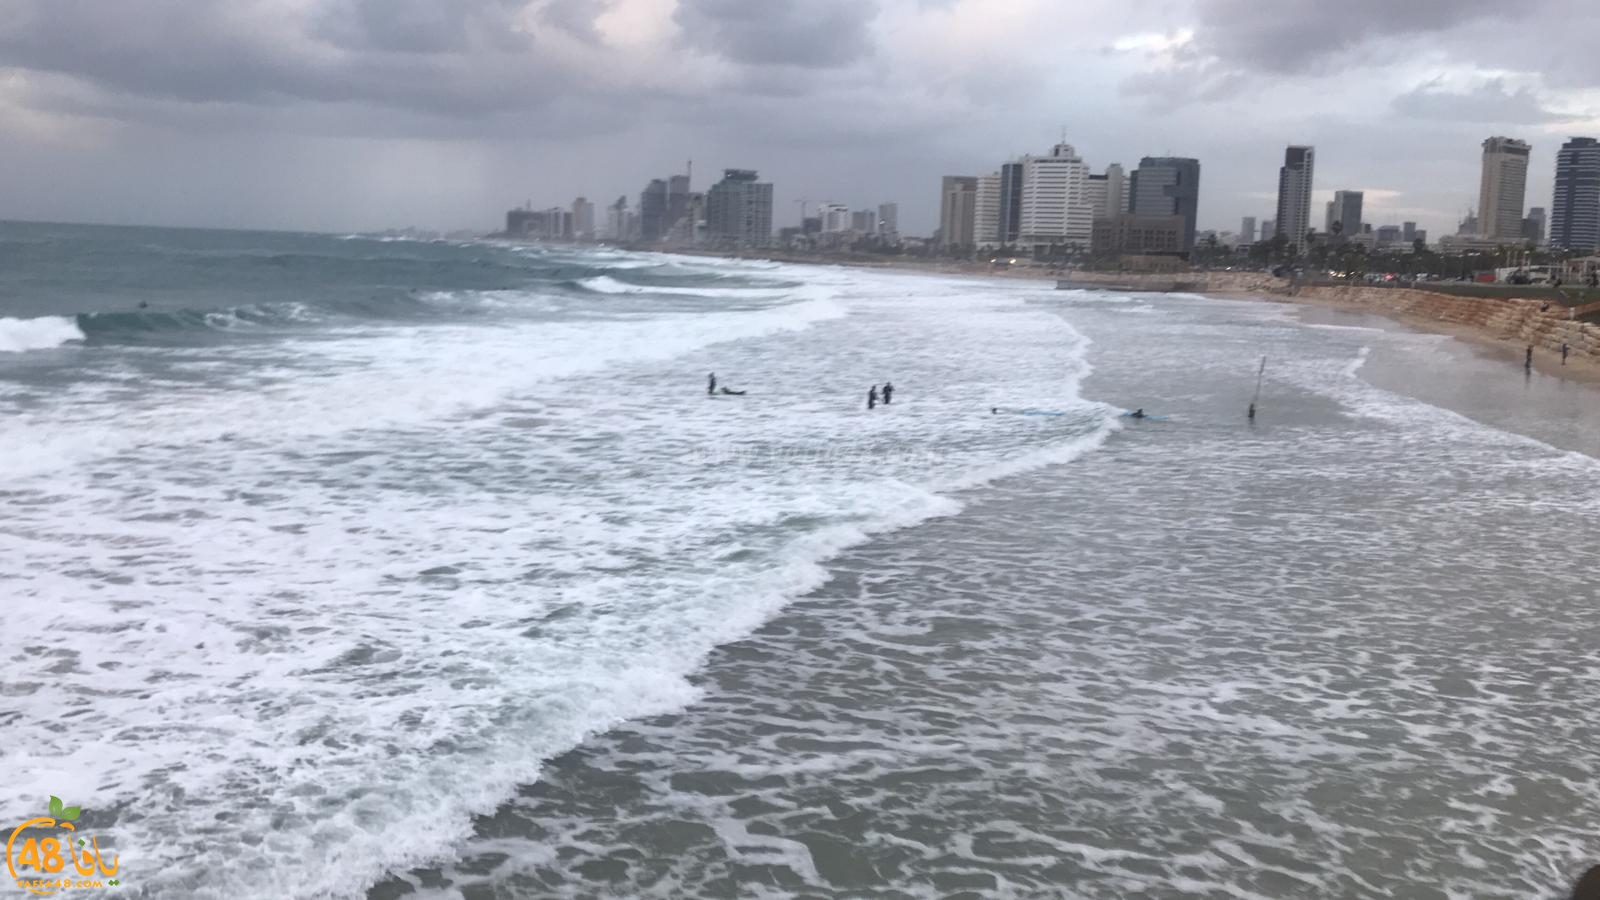  شاهد: الأمواج العالية تجذب محبي ركوب الأمواج على شاطئ بحر يافا 